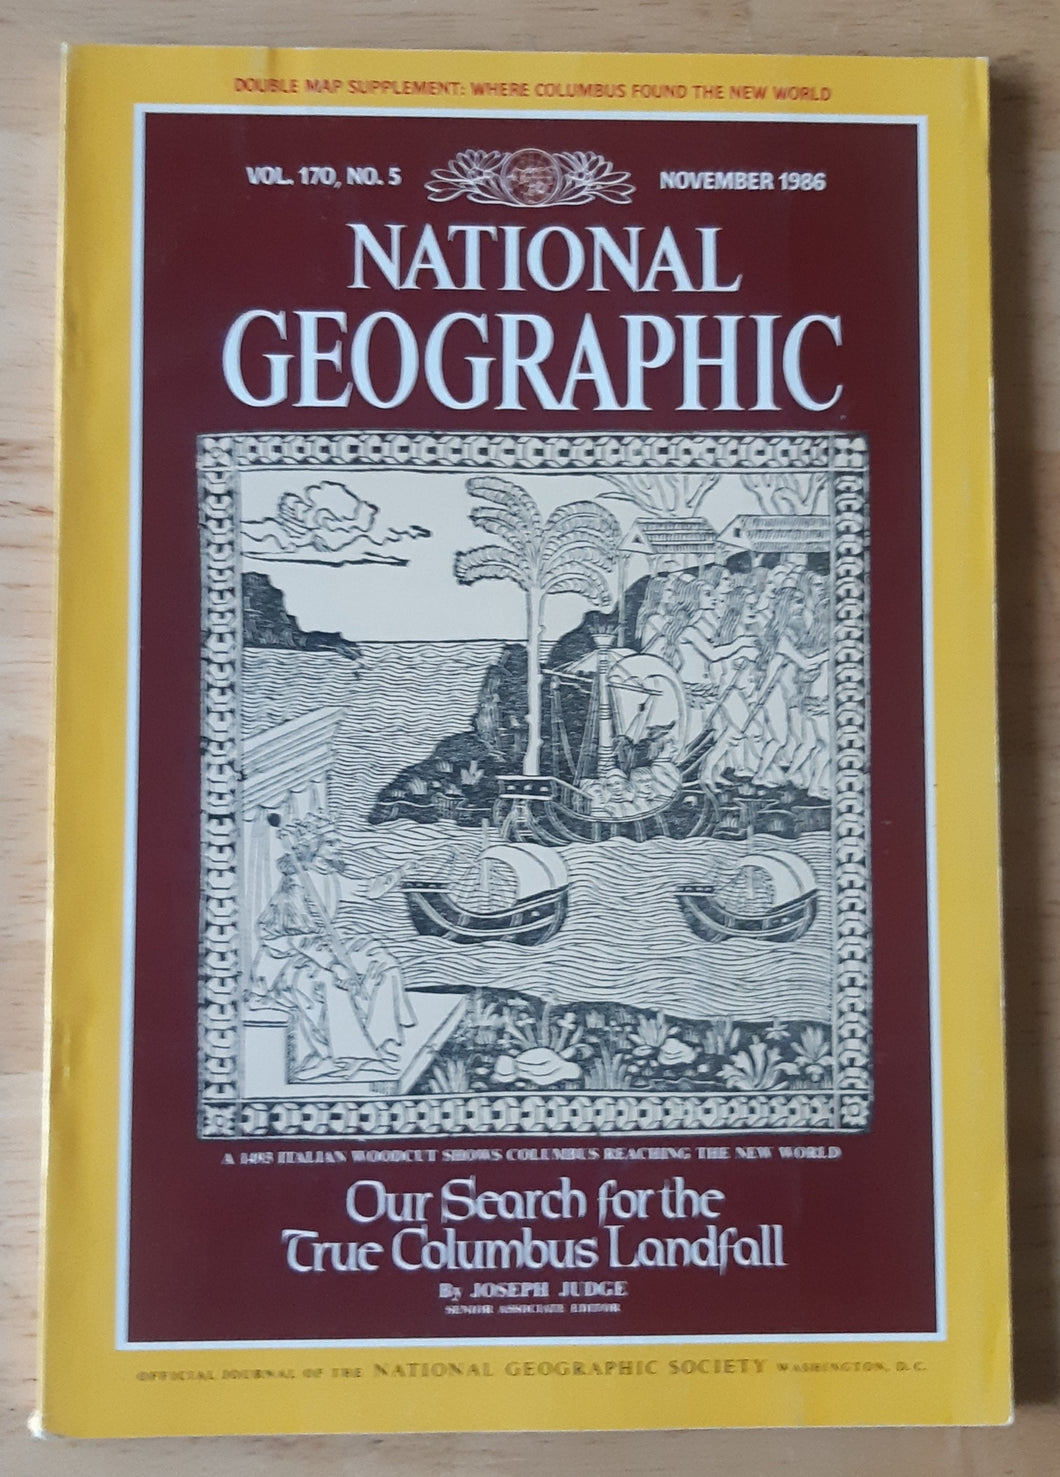 National Geographic - November 1986 (Vol. 170, No. 5)